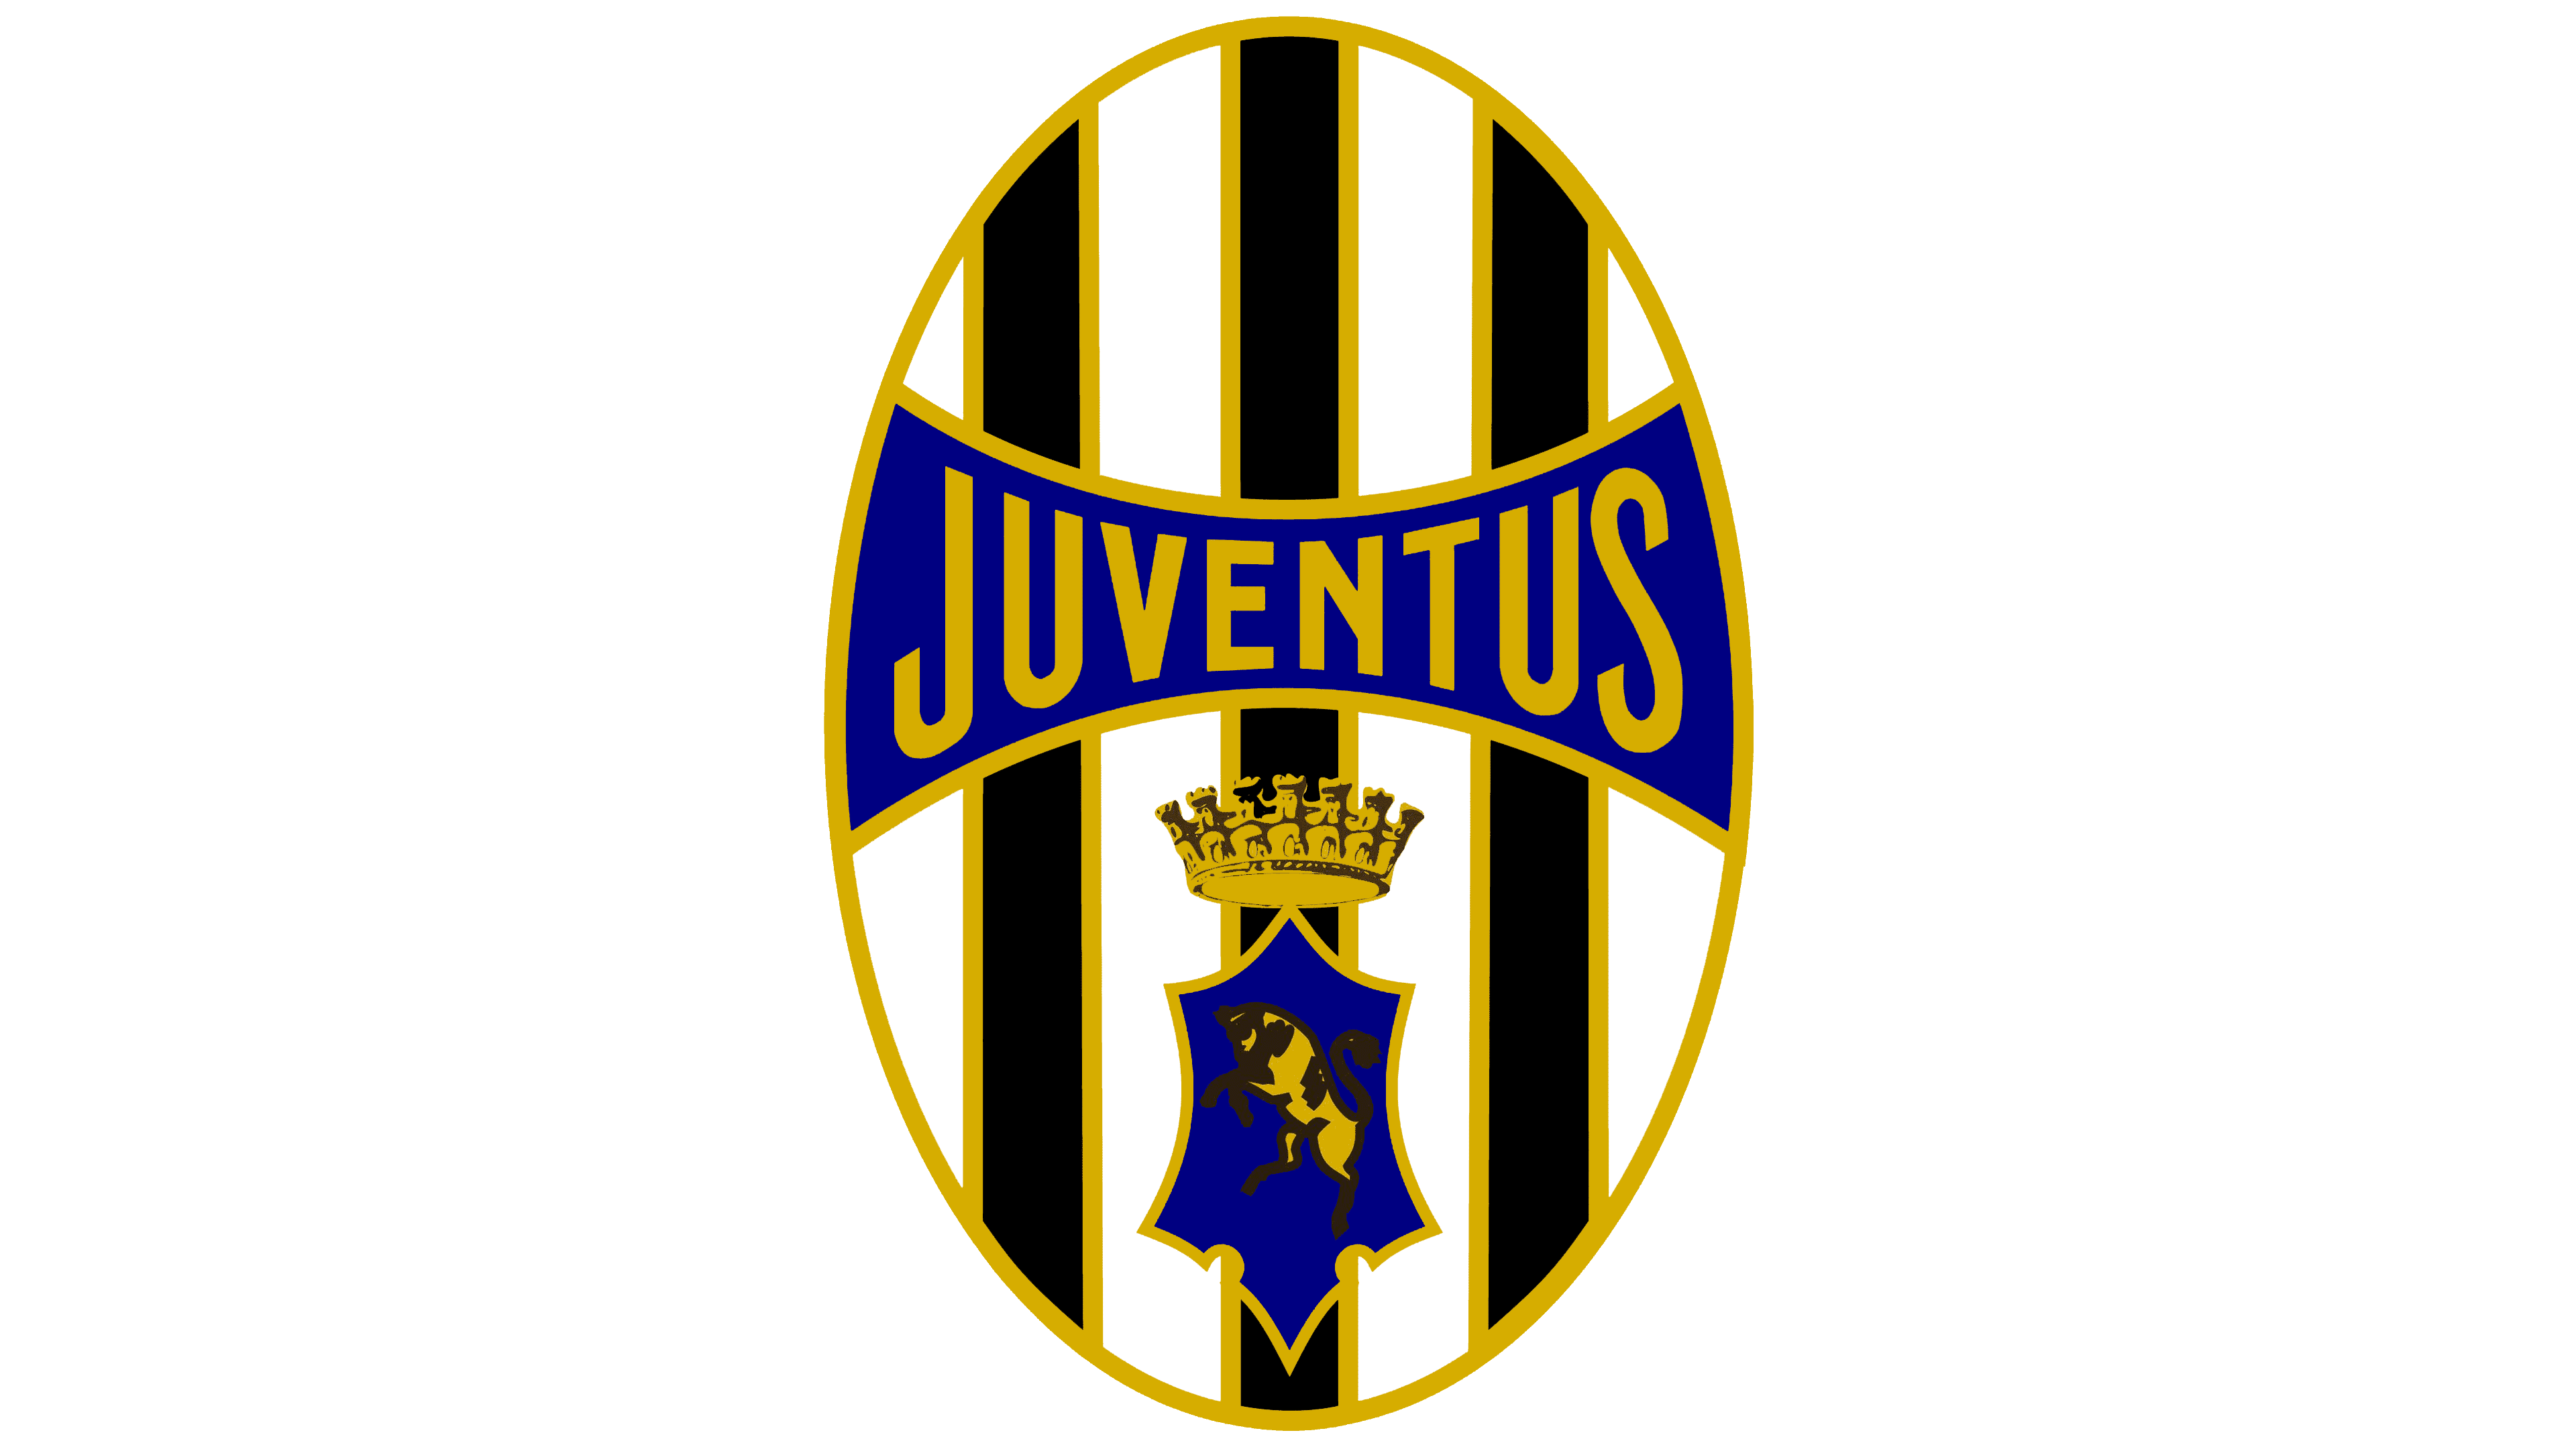 https://logos-world.net/wp-content/uploads/2020/06/Juventus-FC-Logo-1921-1929.png